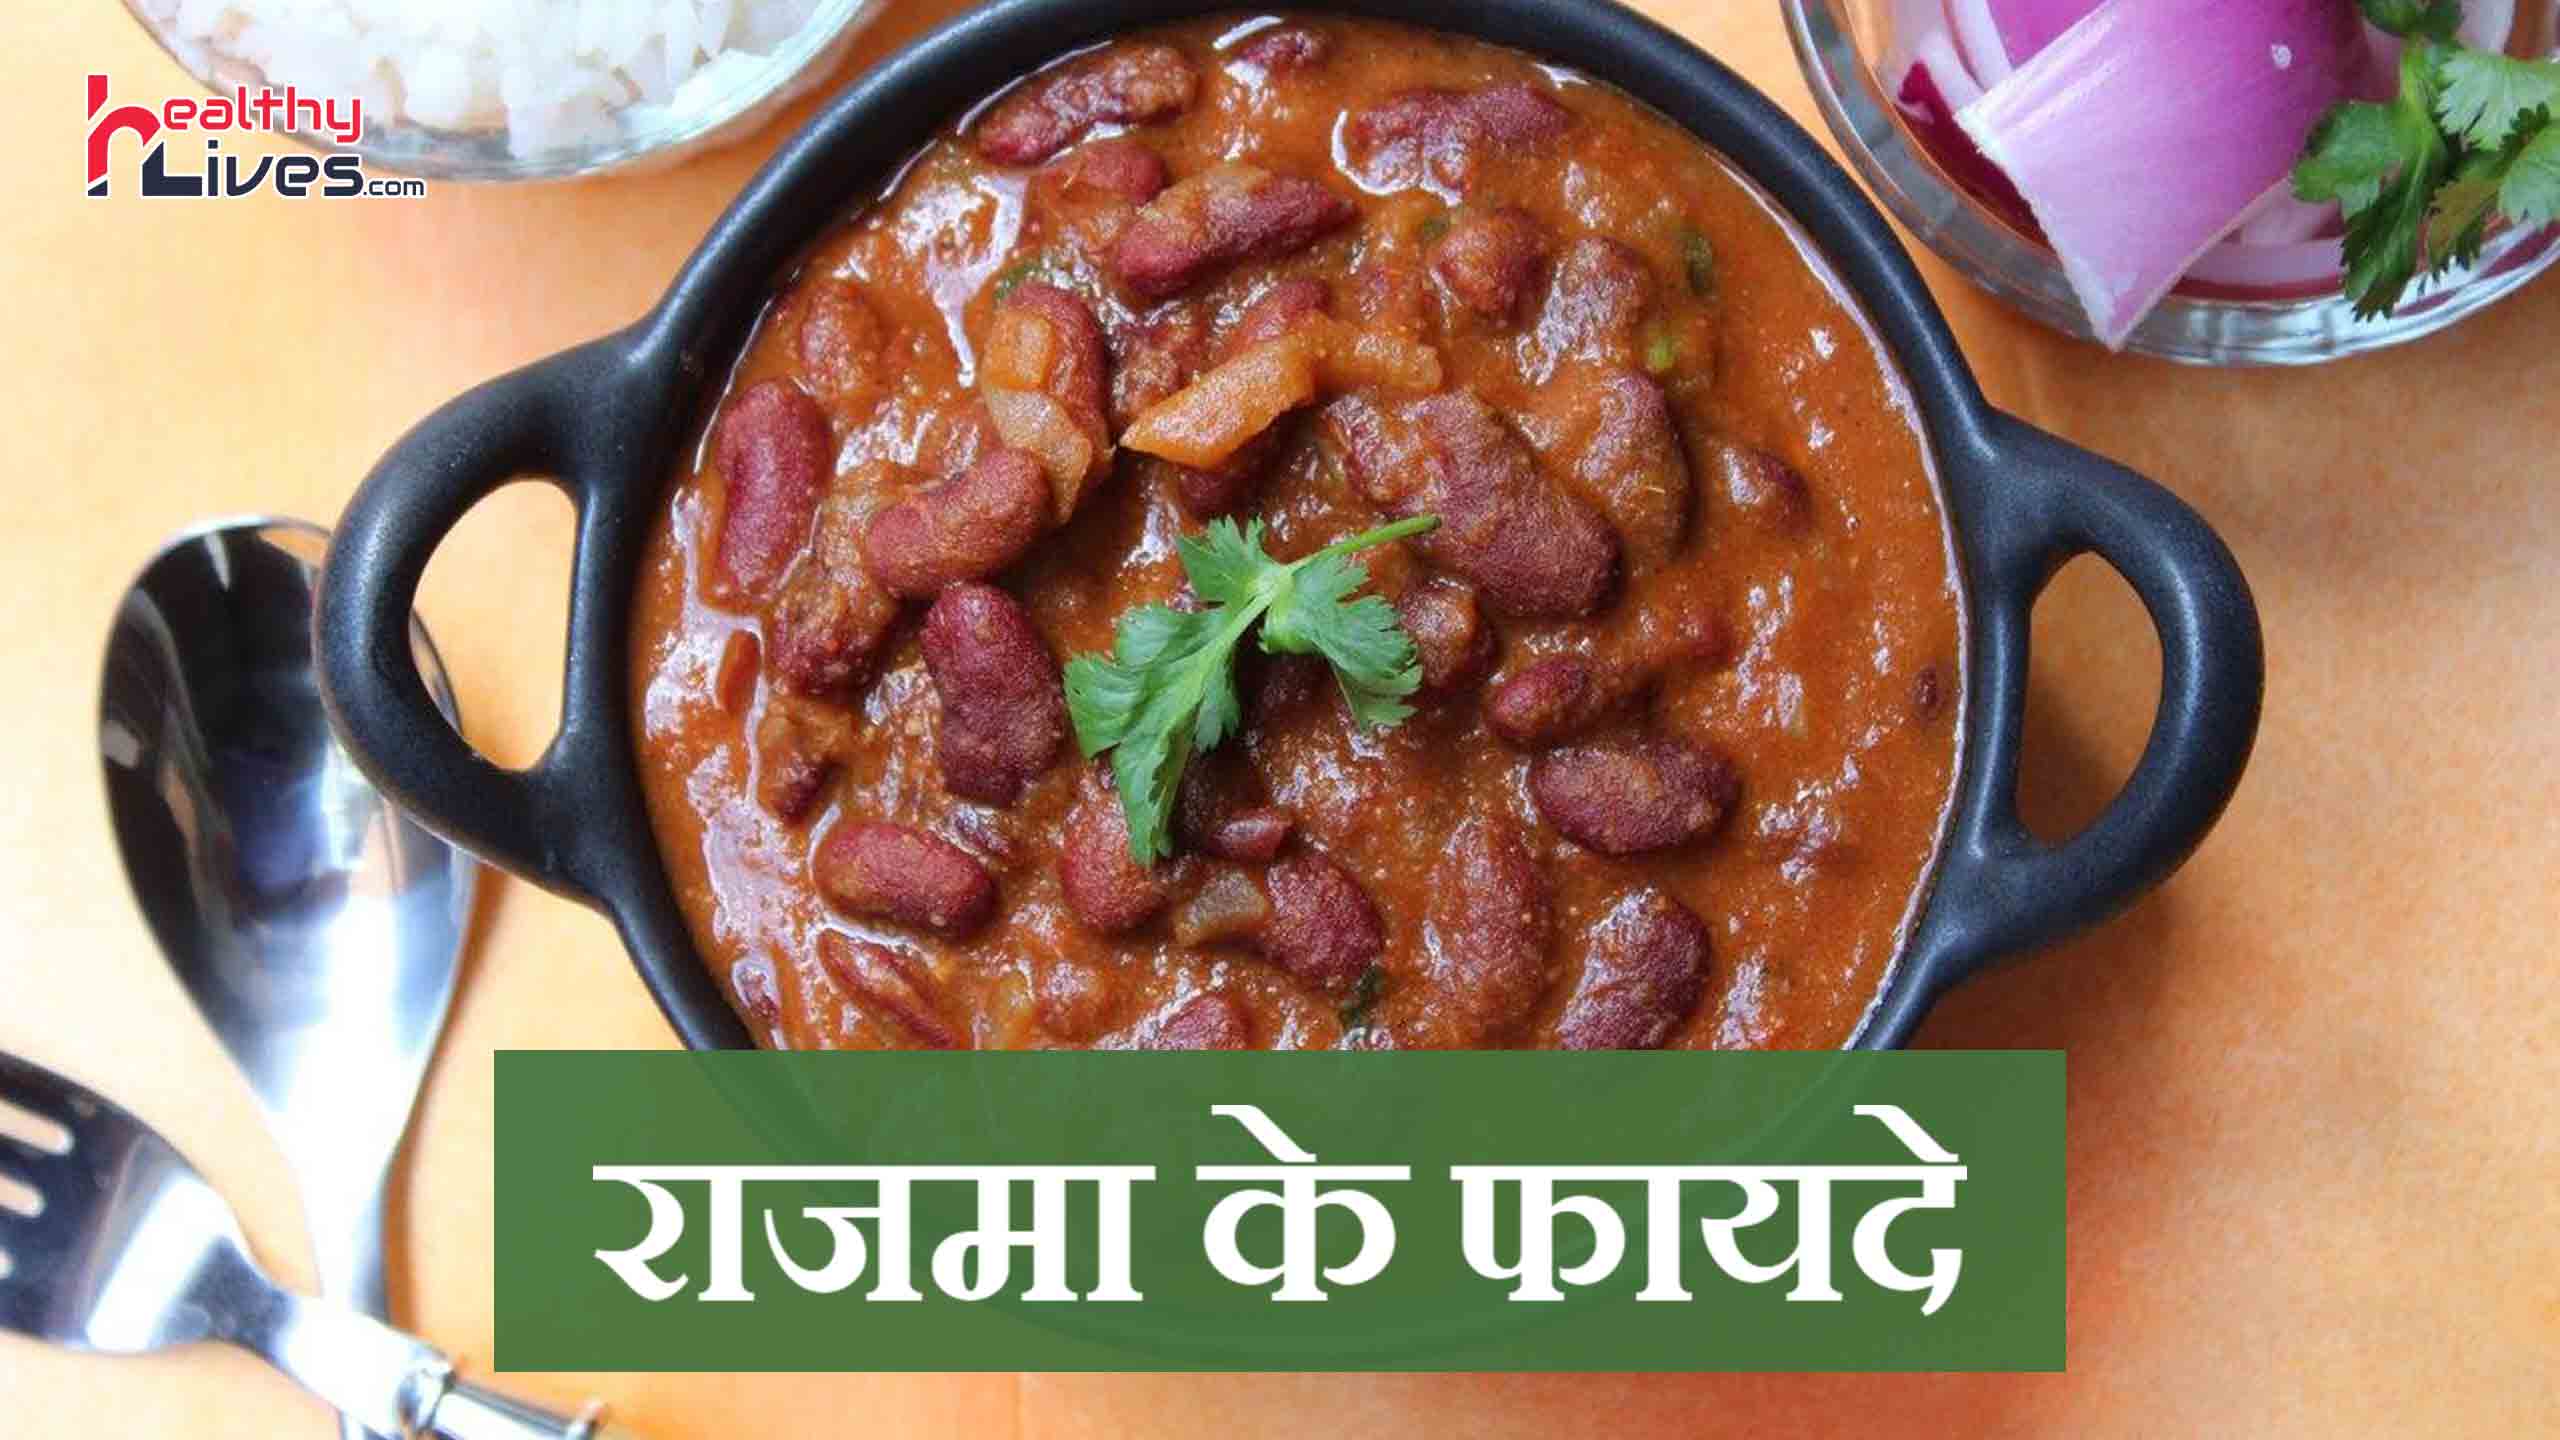 Rajma Benefits in Hindi: राजमा है लाभकारी, इसे खाएं और उठायें इसके लाभ